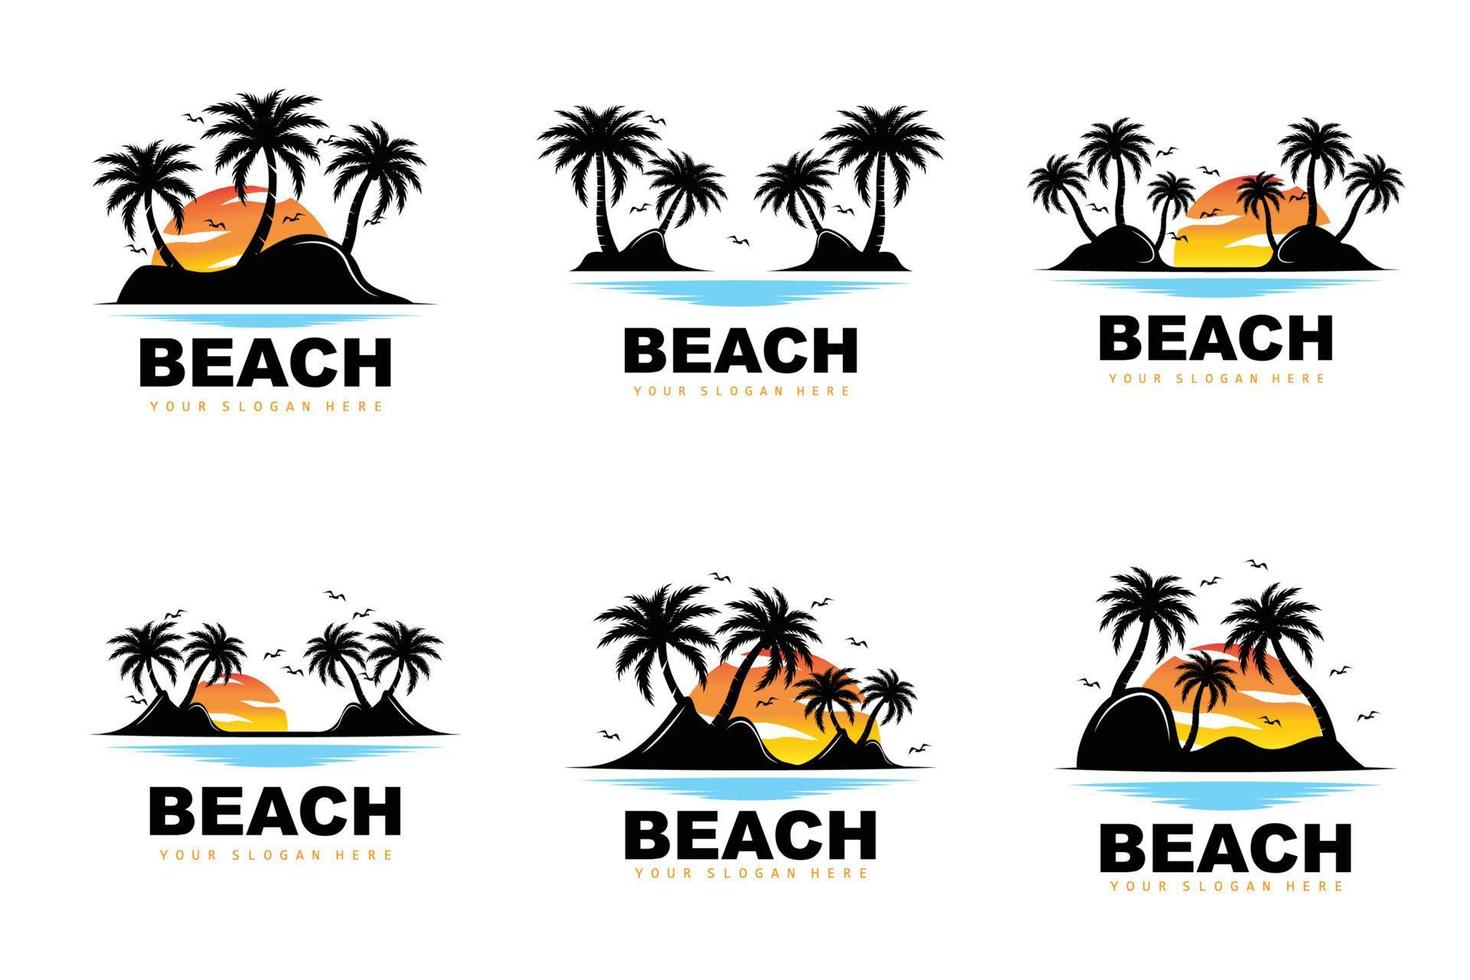 logotipo de coqueiro com atmosfera de praia, vetor de plantas de praia, design de exibição do pôr do sol